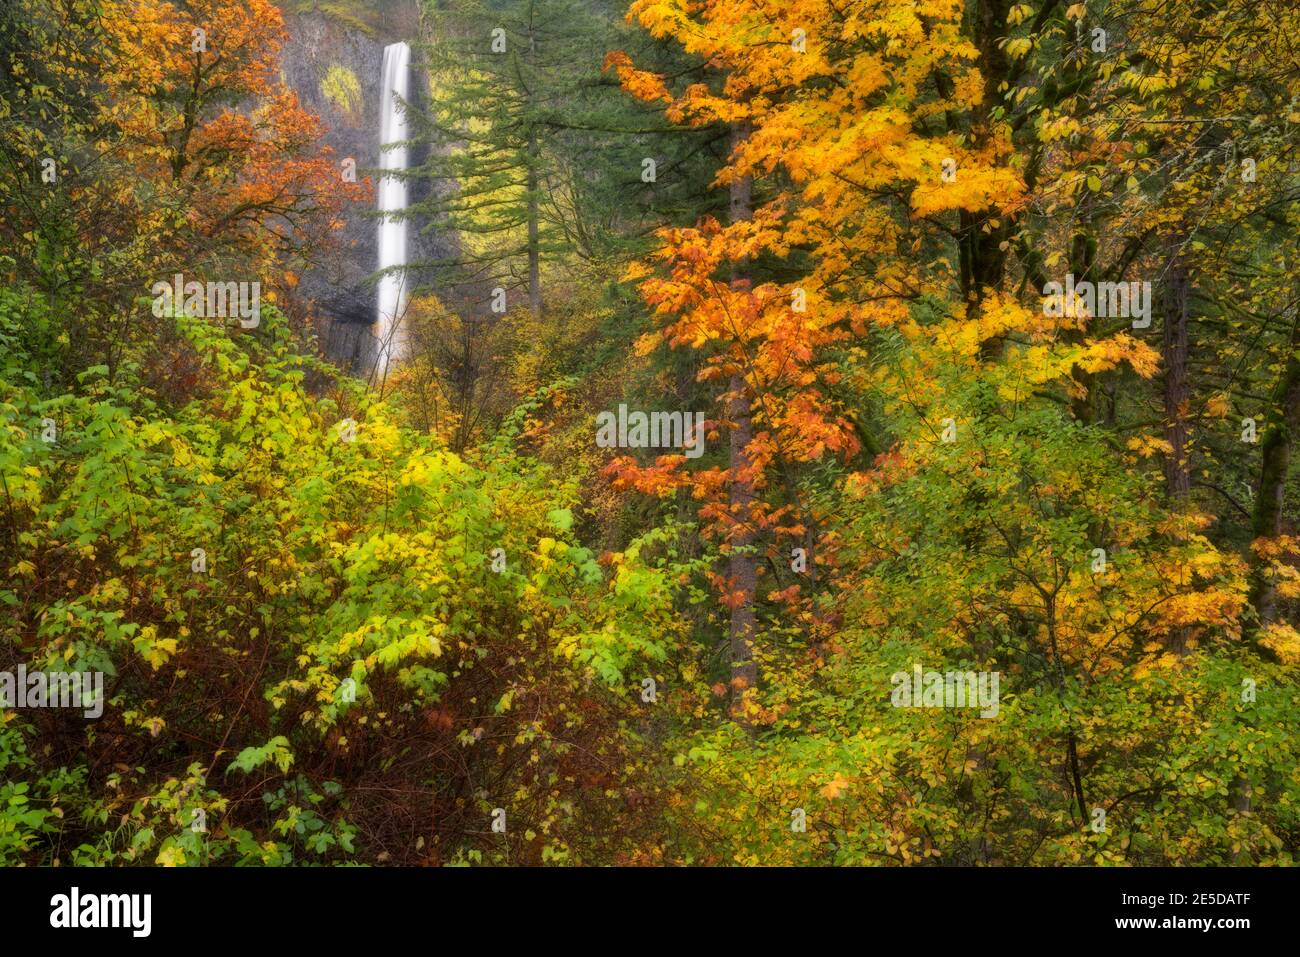 Herbstfarben umrahmen die 250 Fuß lange Abfahrt der Latourell Falls über gelbem, flechtenfarbigem Basalt in der Columbia River Gorge in Oregon. Stockfoto